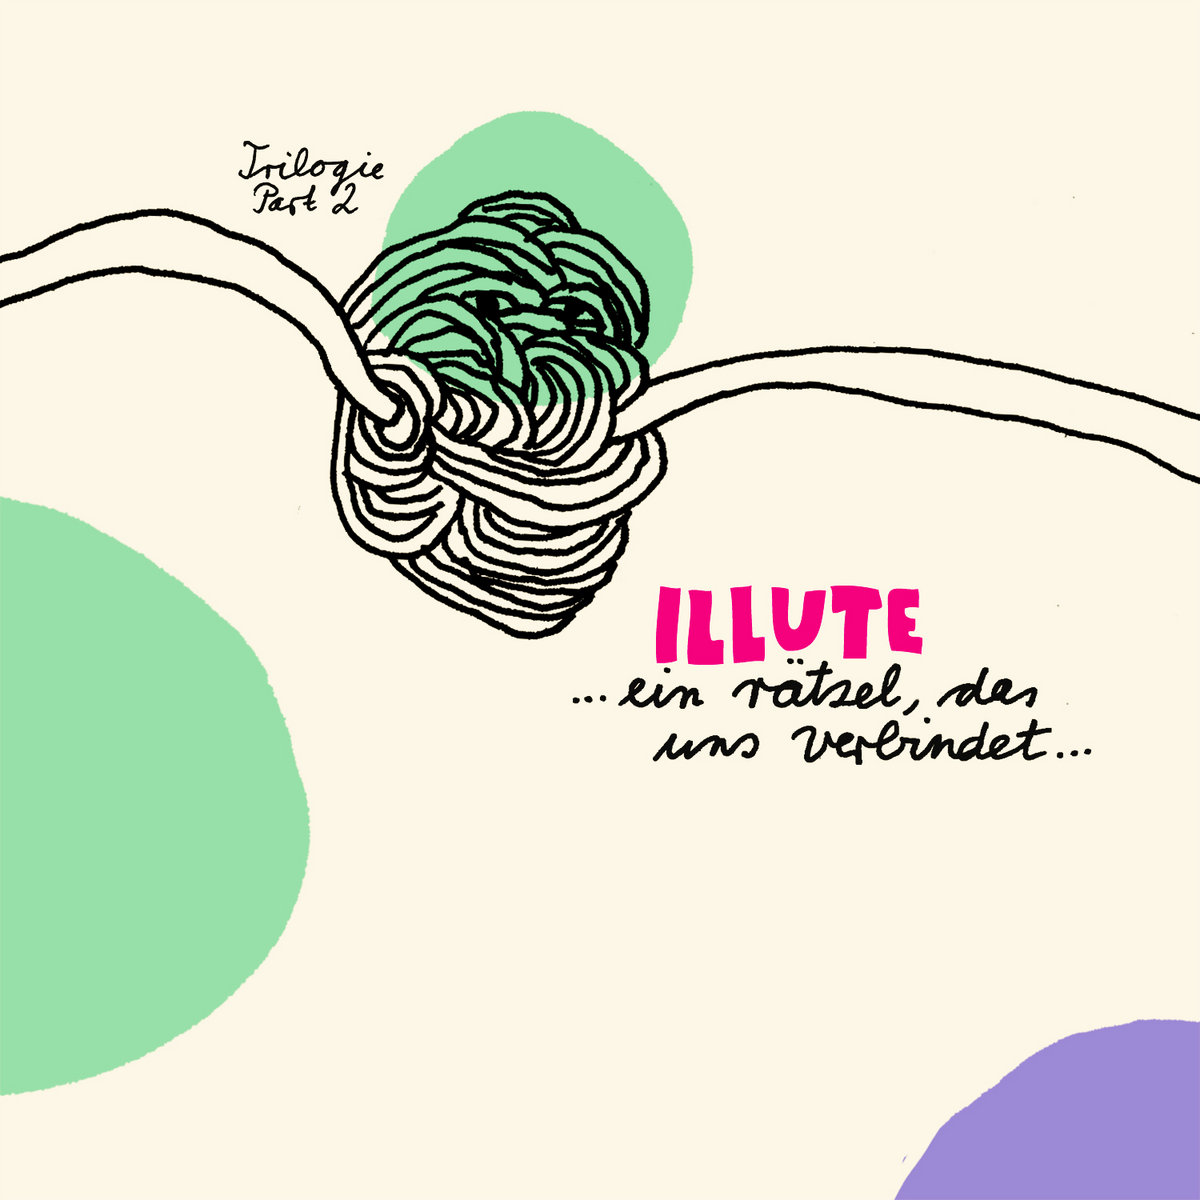 Review: Illute - …ein Rätsel, das uns verbindet...